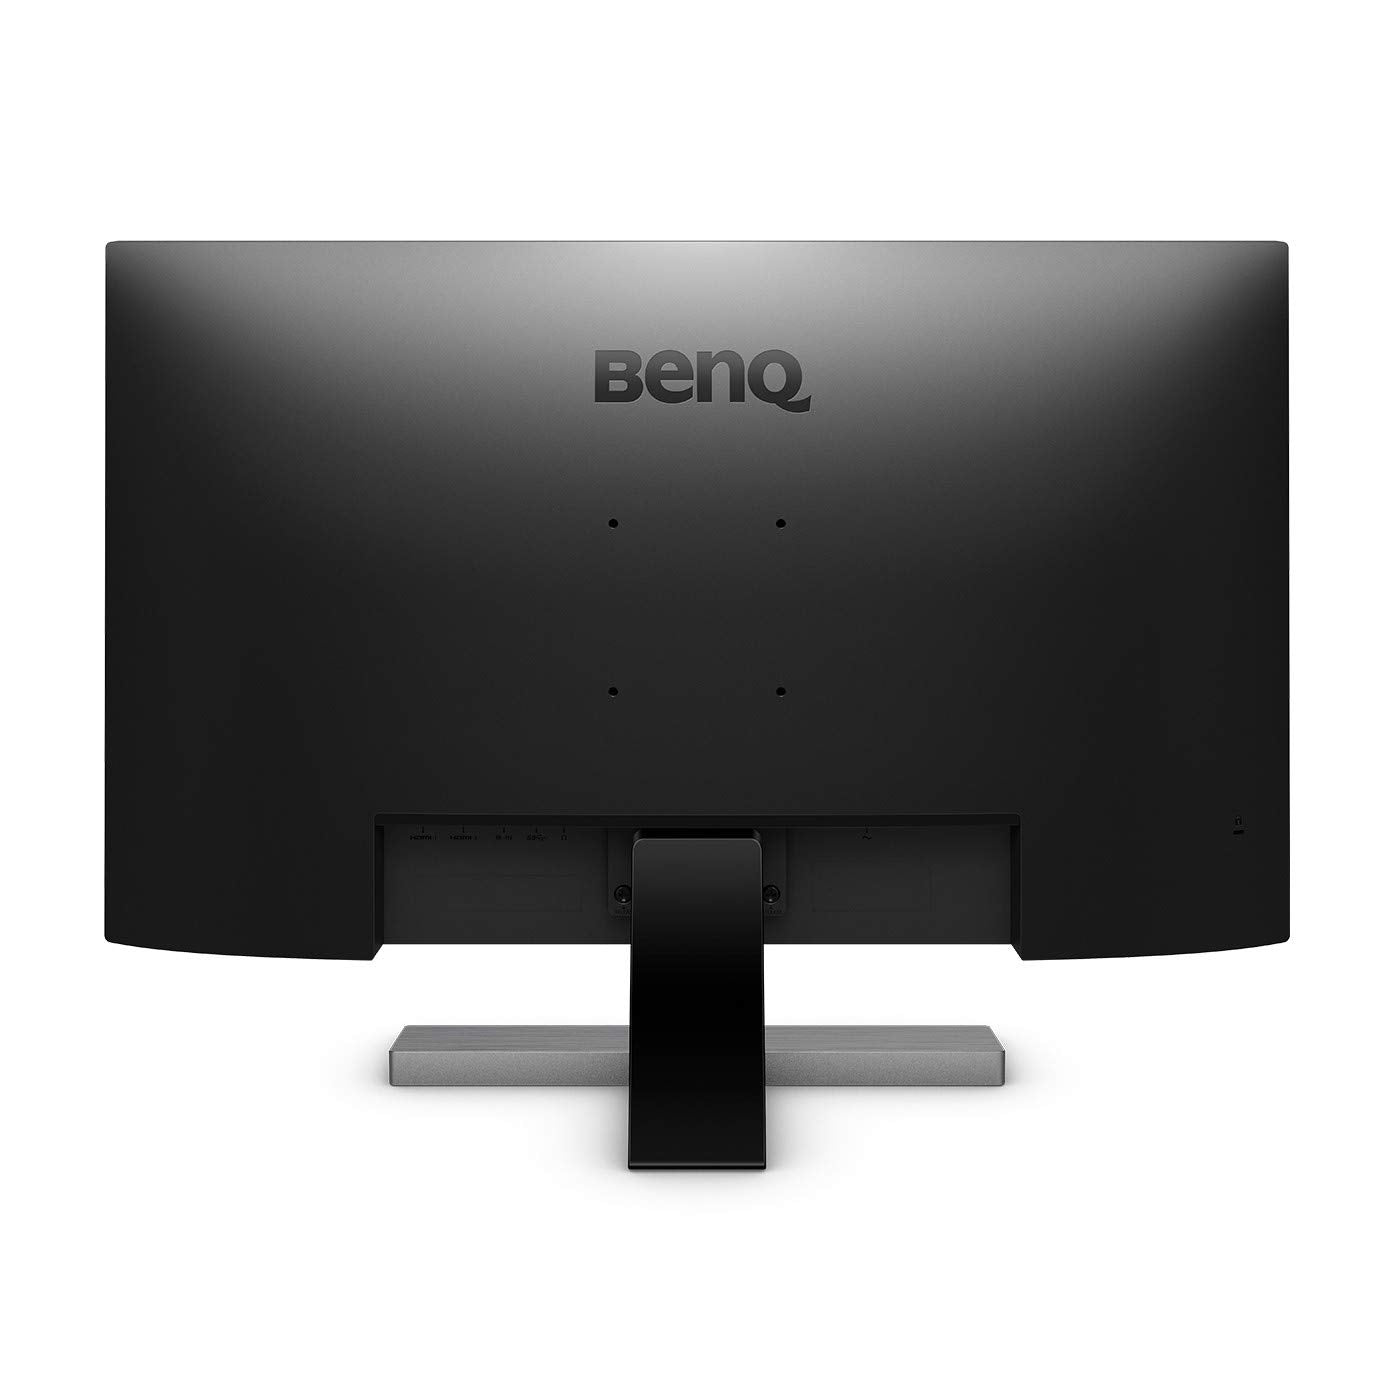 BenQ EW3270U 31.5 inch 4K Monitor | yrGear Australia